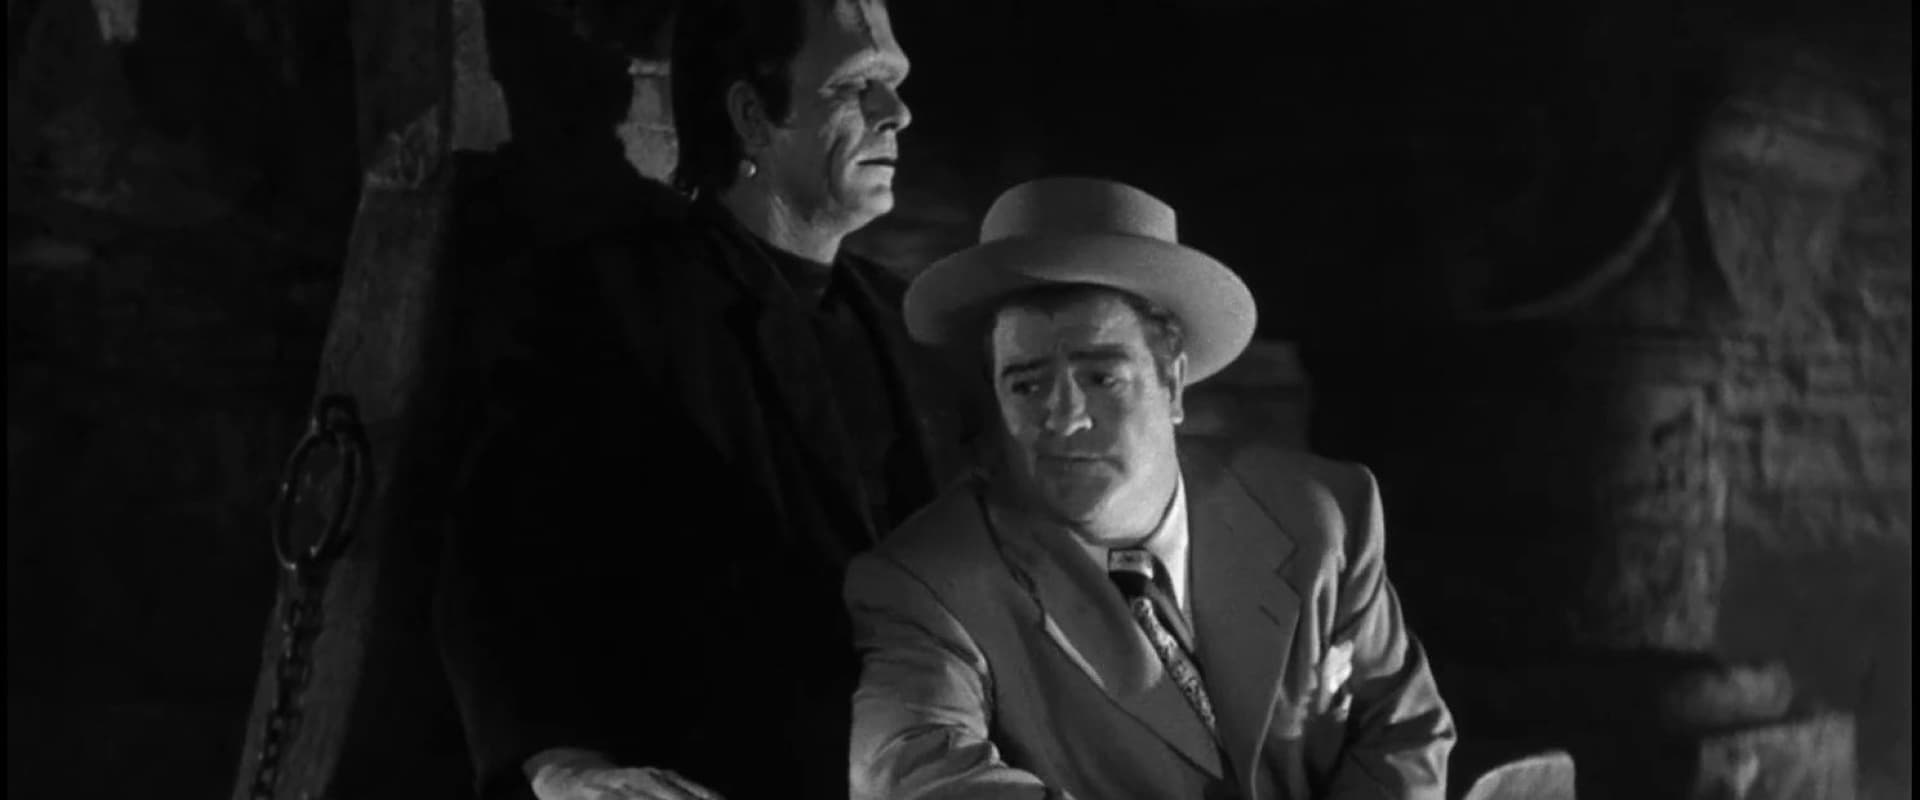 Bud Abbott and Lou Costello Meet Frankenstein